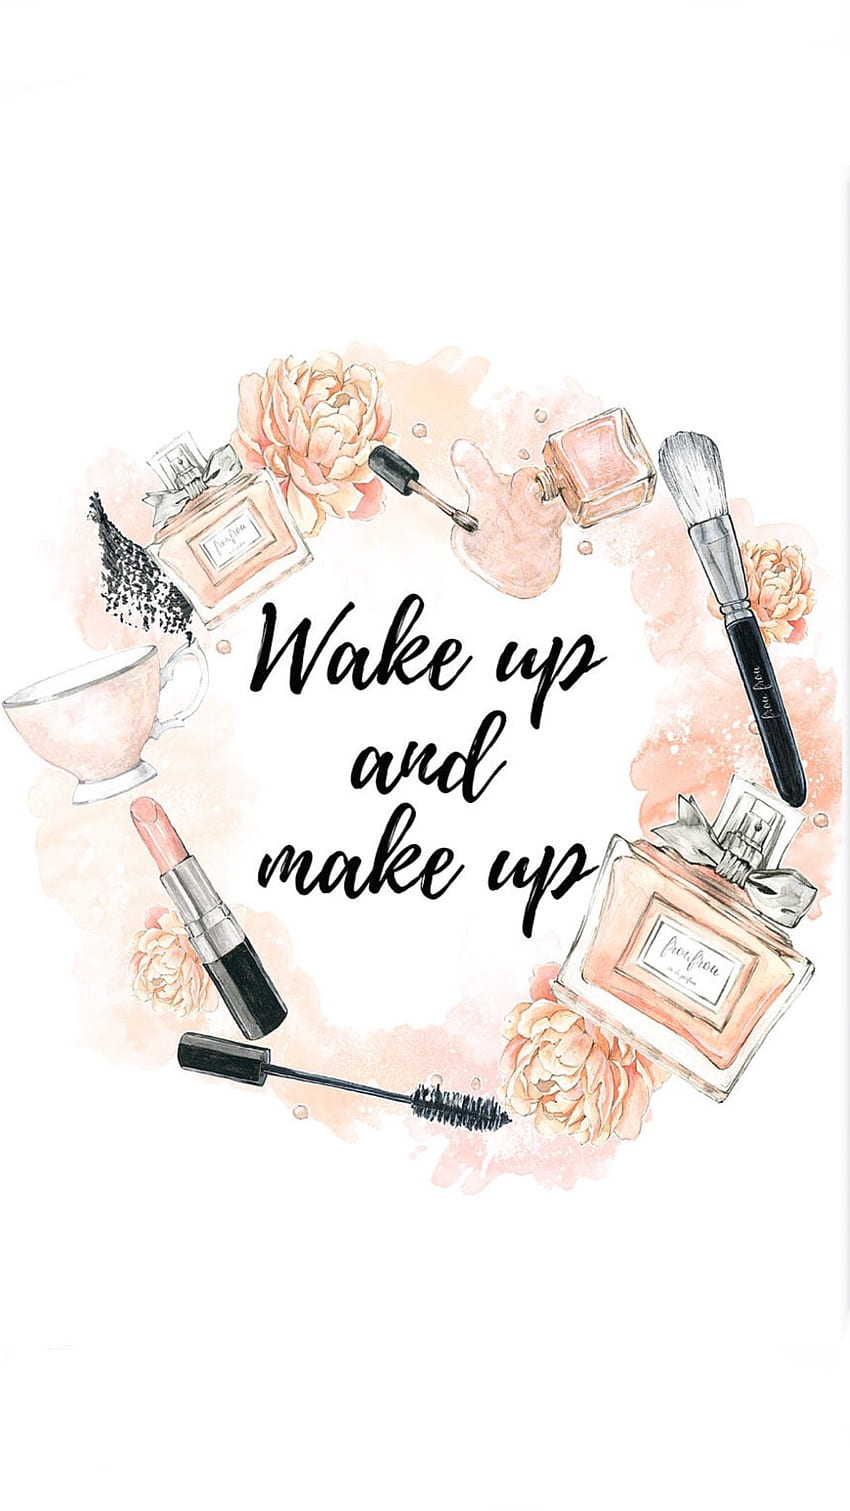 Gertrude Smith on Skin care in 2020. Makeup illustration, Makeup , Makeup logo, Makeup Quotes HD phone wallpaper